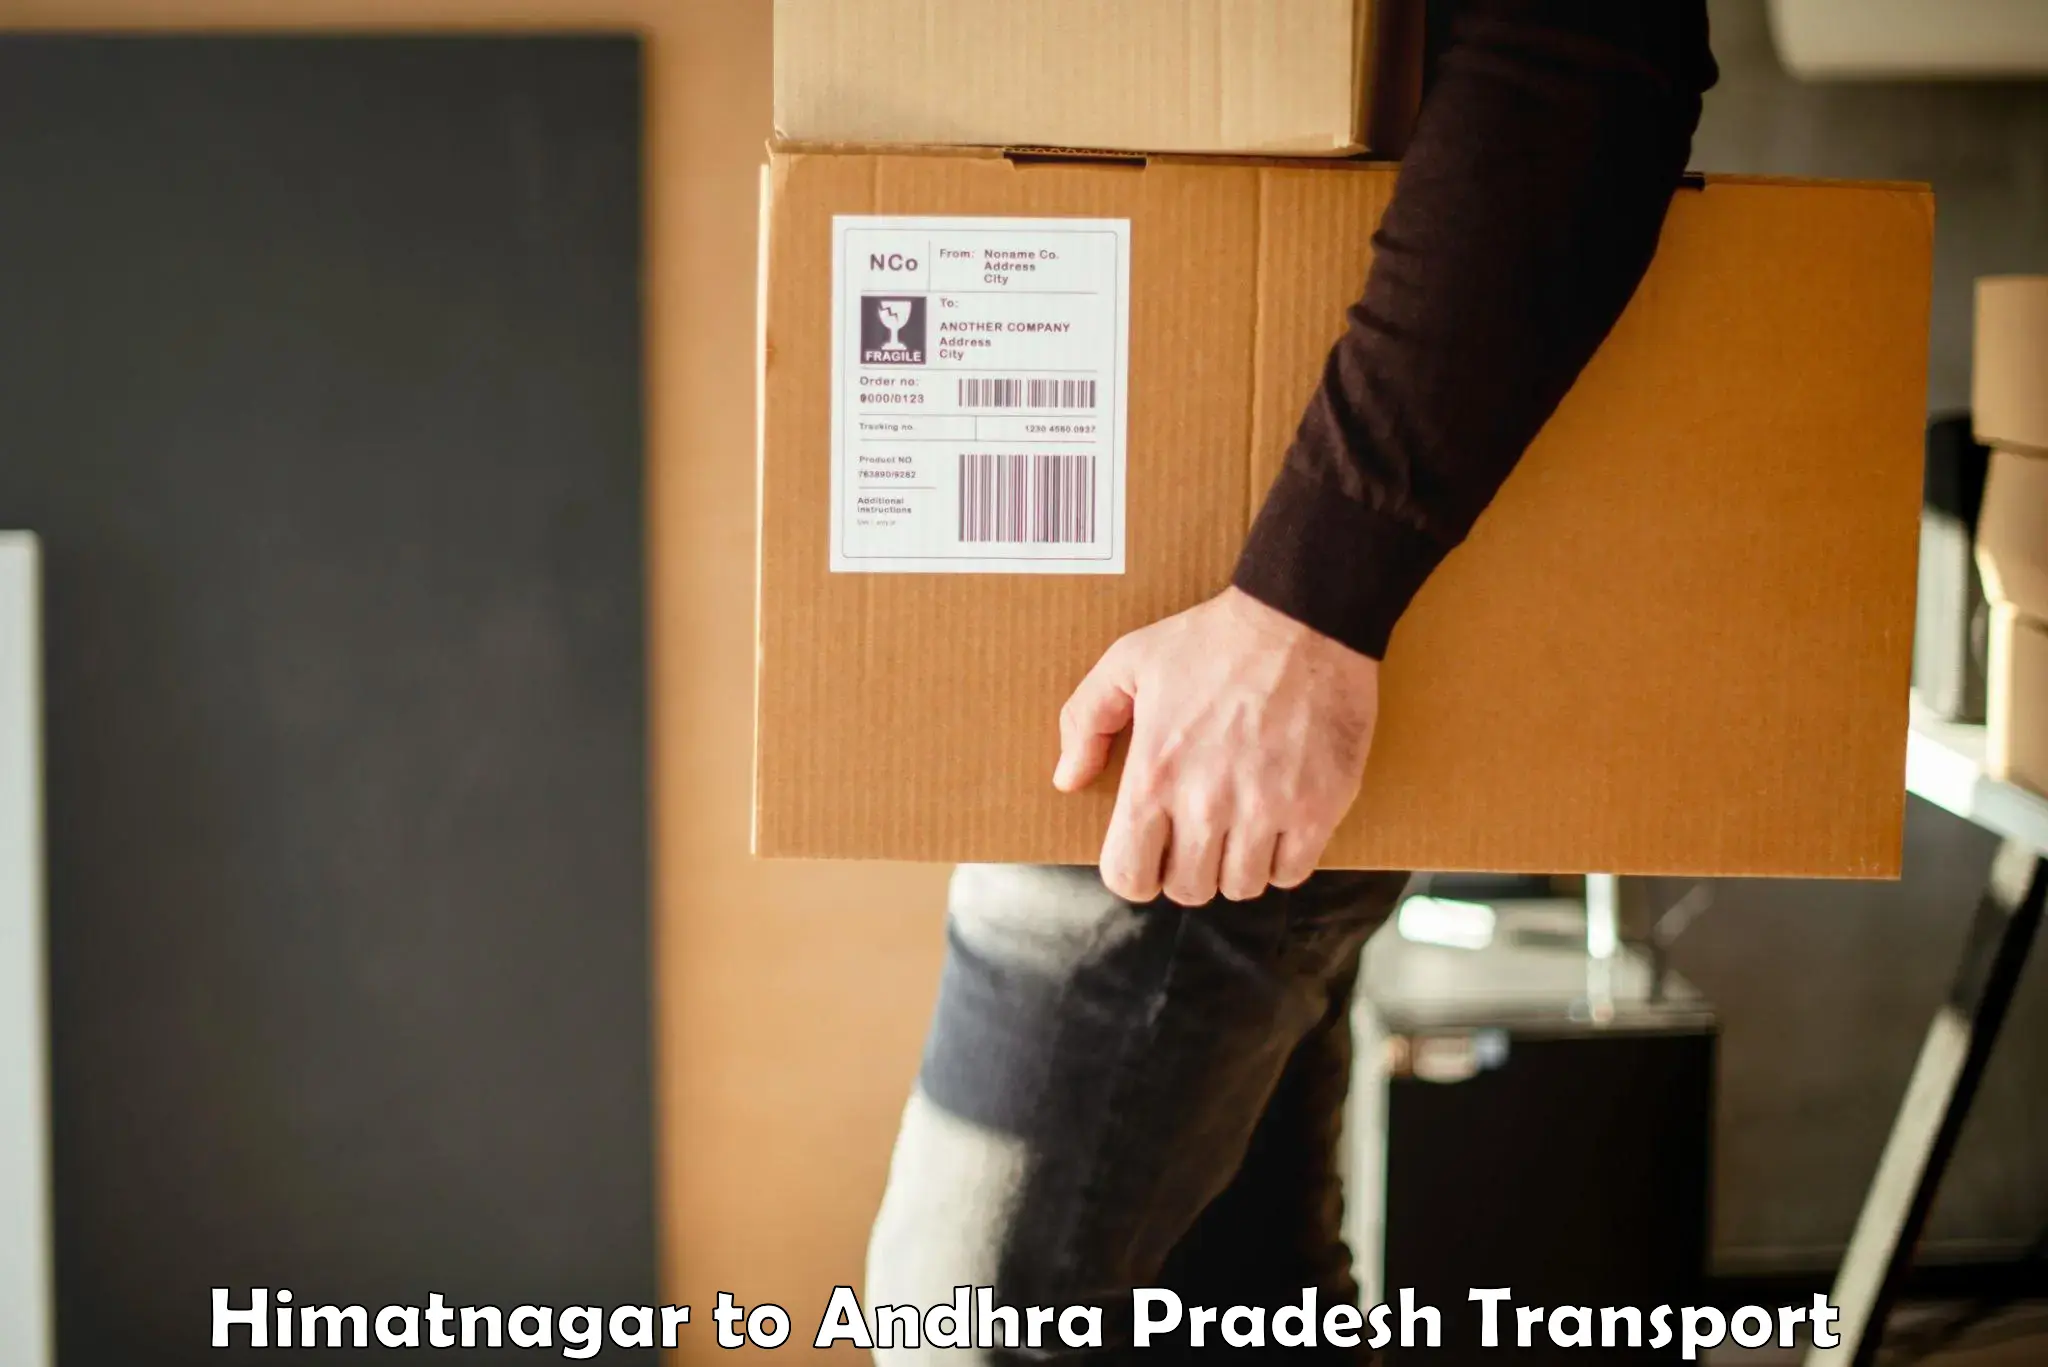 Cargo transportation services Himatnagar to Visakhapatnam Port